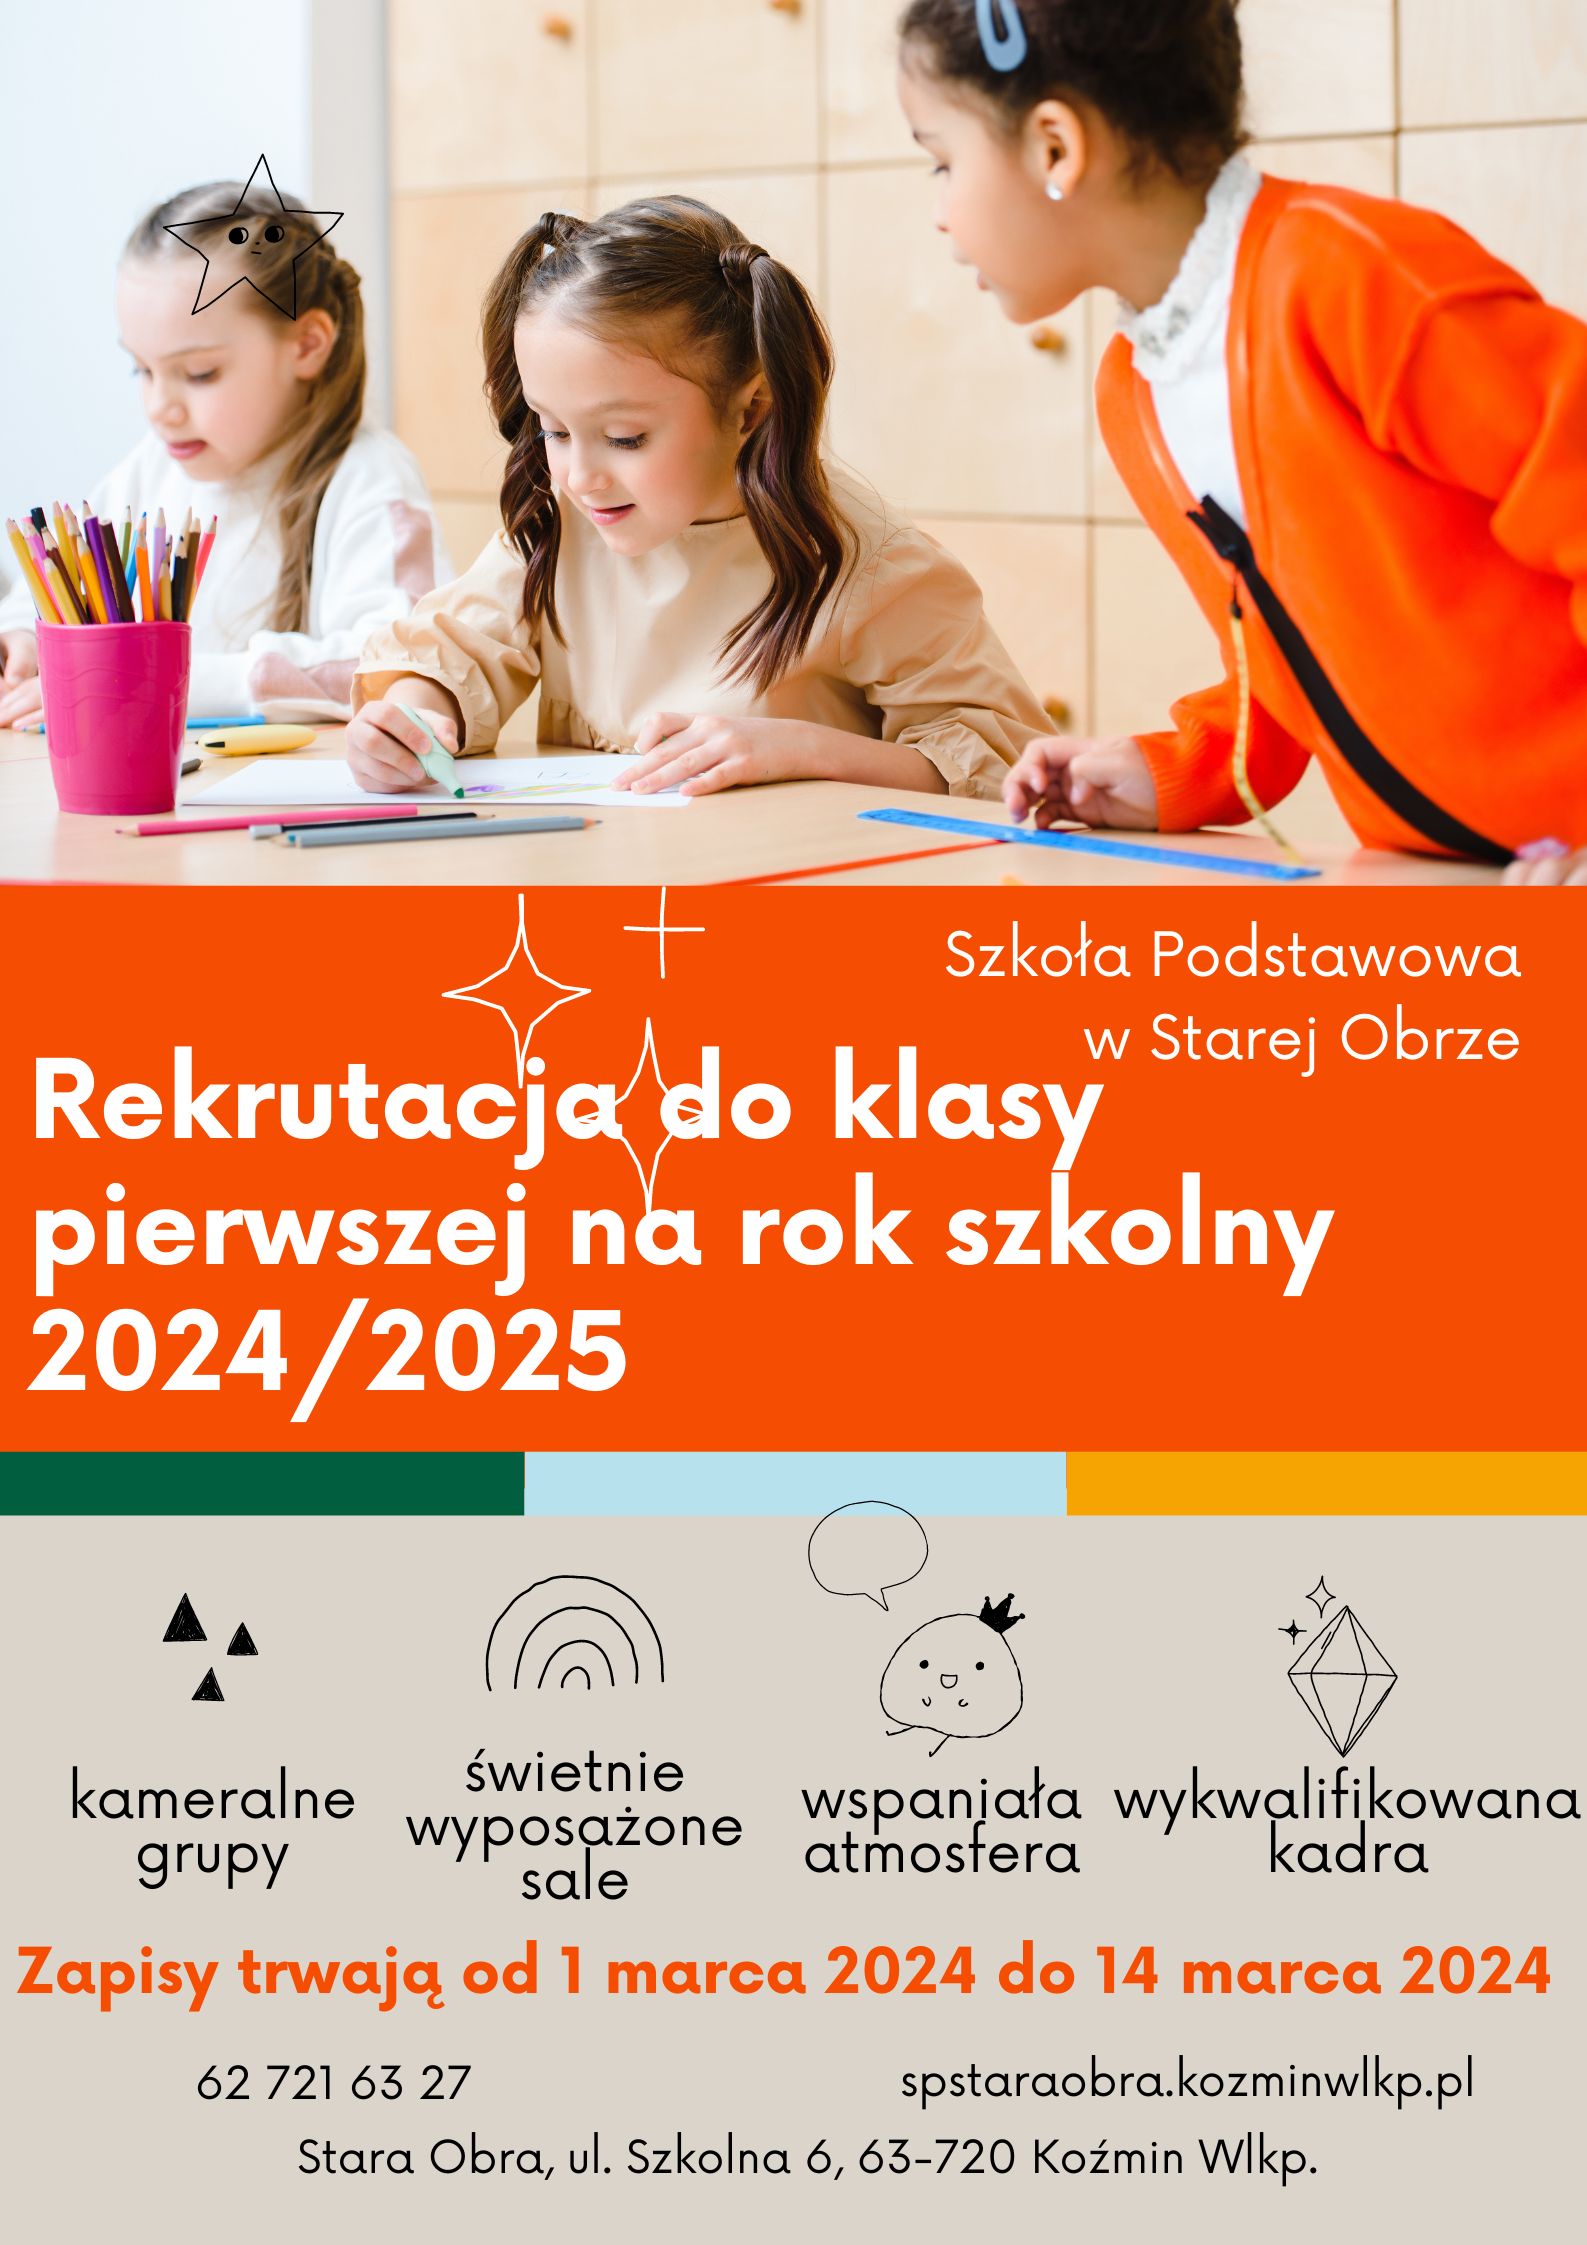 Rekrutacja do klasy pierwszej na rok szkolny 2024/2025